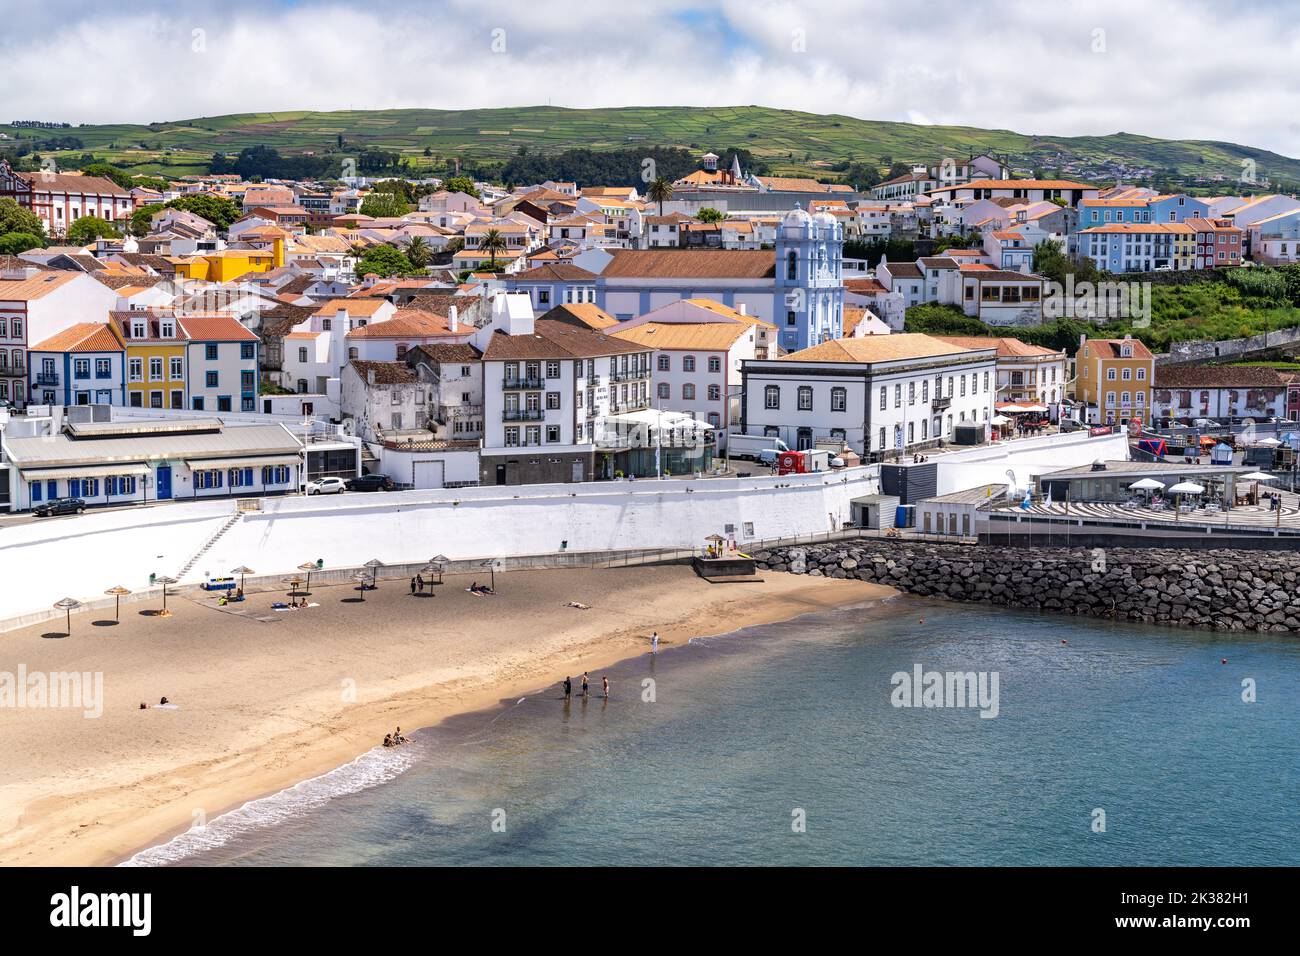 Vista de la ciudad de la playa pública llamada Praia de Angra do Heroismo y puerto deportivo de la ciudad en el centro histórico de Angra do Heroismo, Isla Terceira, Azores, Portugal. Foto de stock